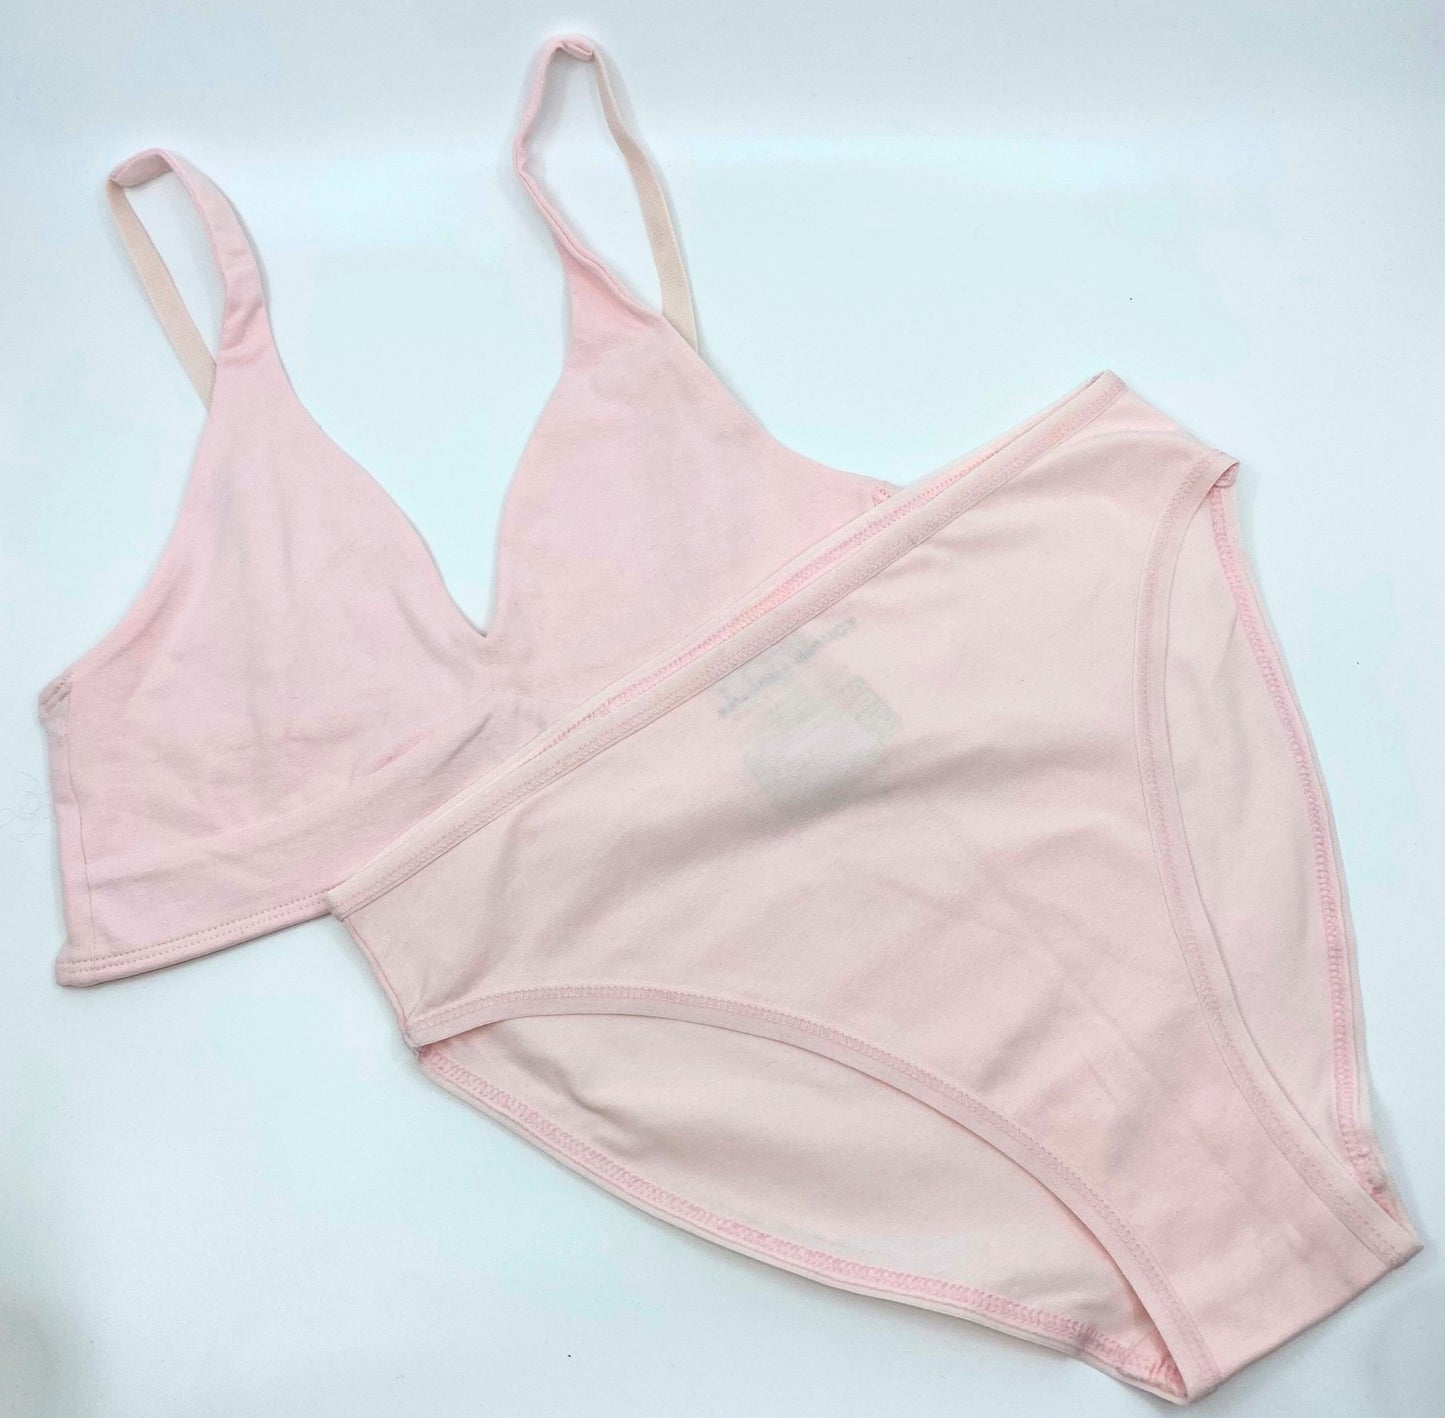 Women's organic cotton matching bralette and mid-rise bikini set - Light Pink